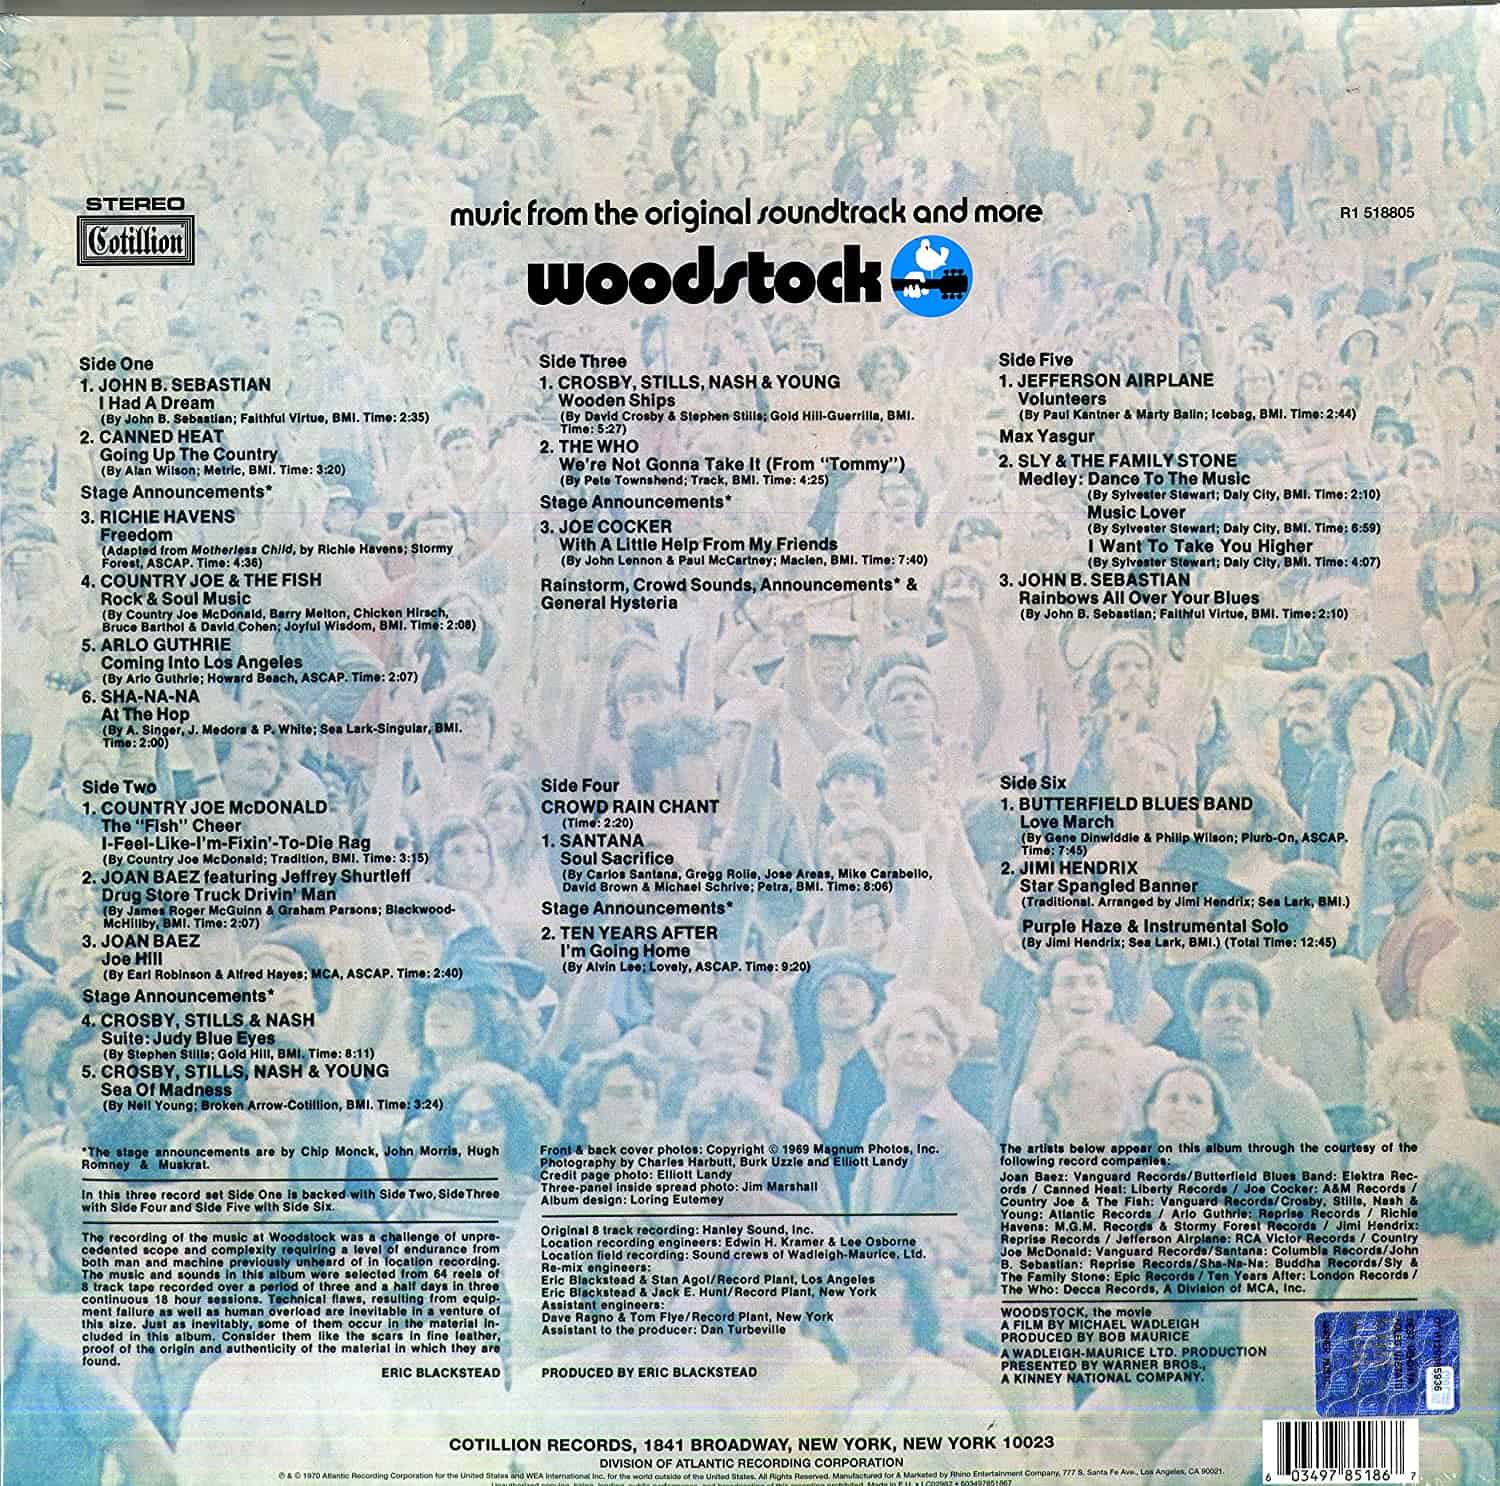 Woodstock-Original-Soundtrack-vinyl-LP-record-album-back